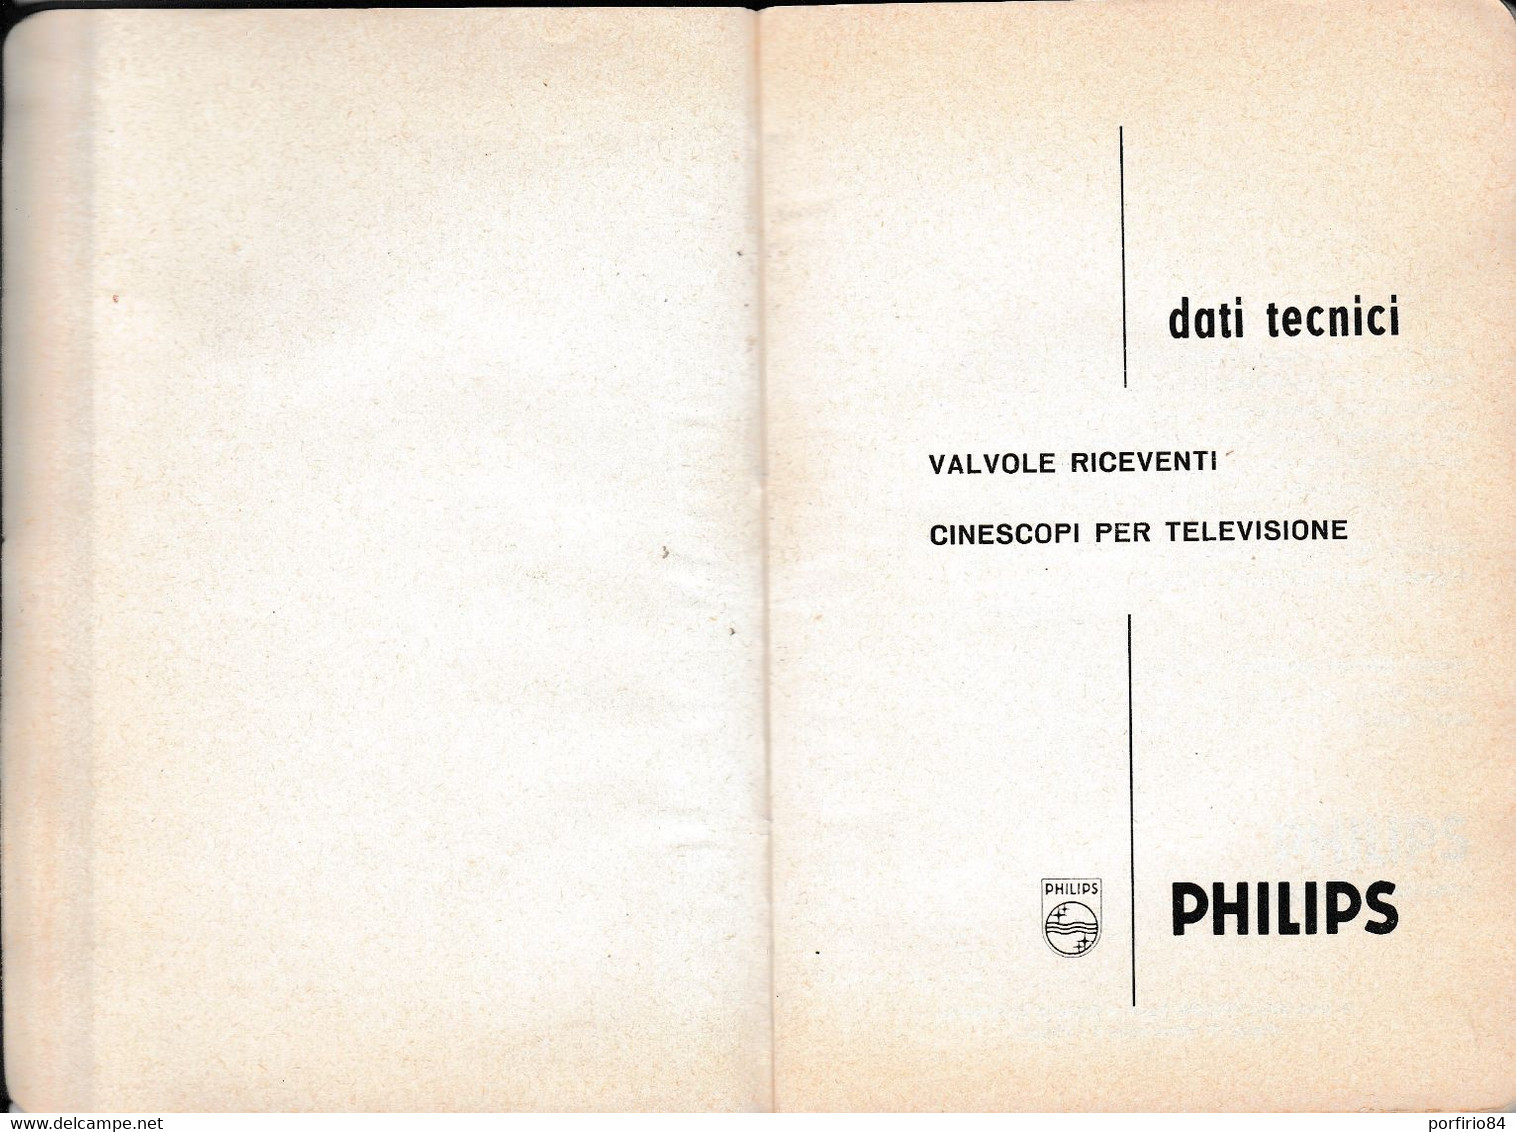 VALVOLE RICEVENTI CINESCOPI PER TELEVISIONE PHILIPS /DATI TECNICI_CATALOGO 1962 - Cinéma Et Musique